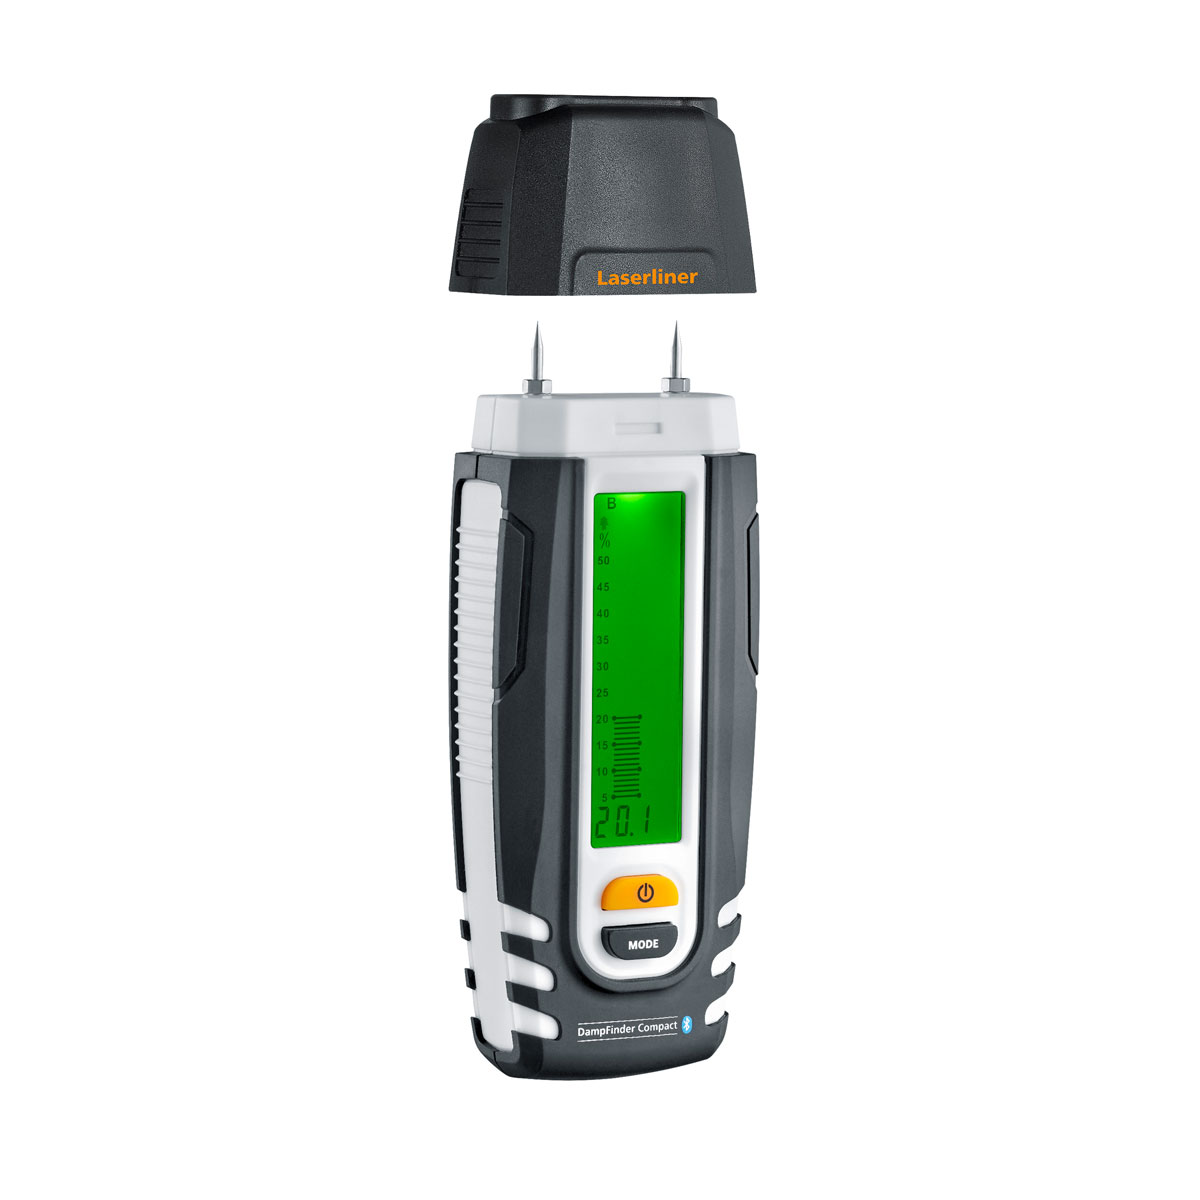 Einstech-Feuchtigkeitsmesser „DampFinder Compact Plus BLE“